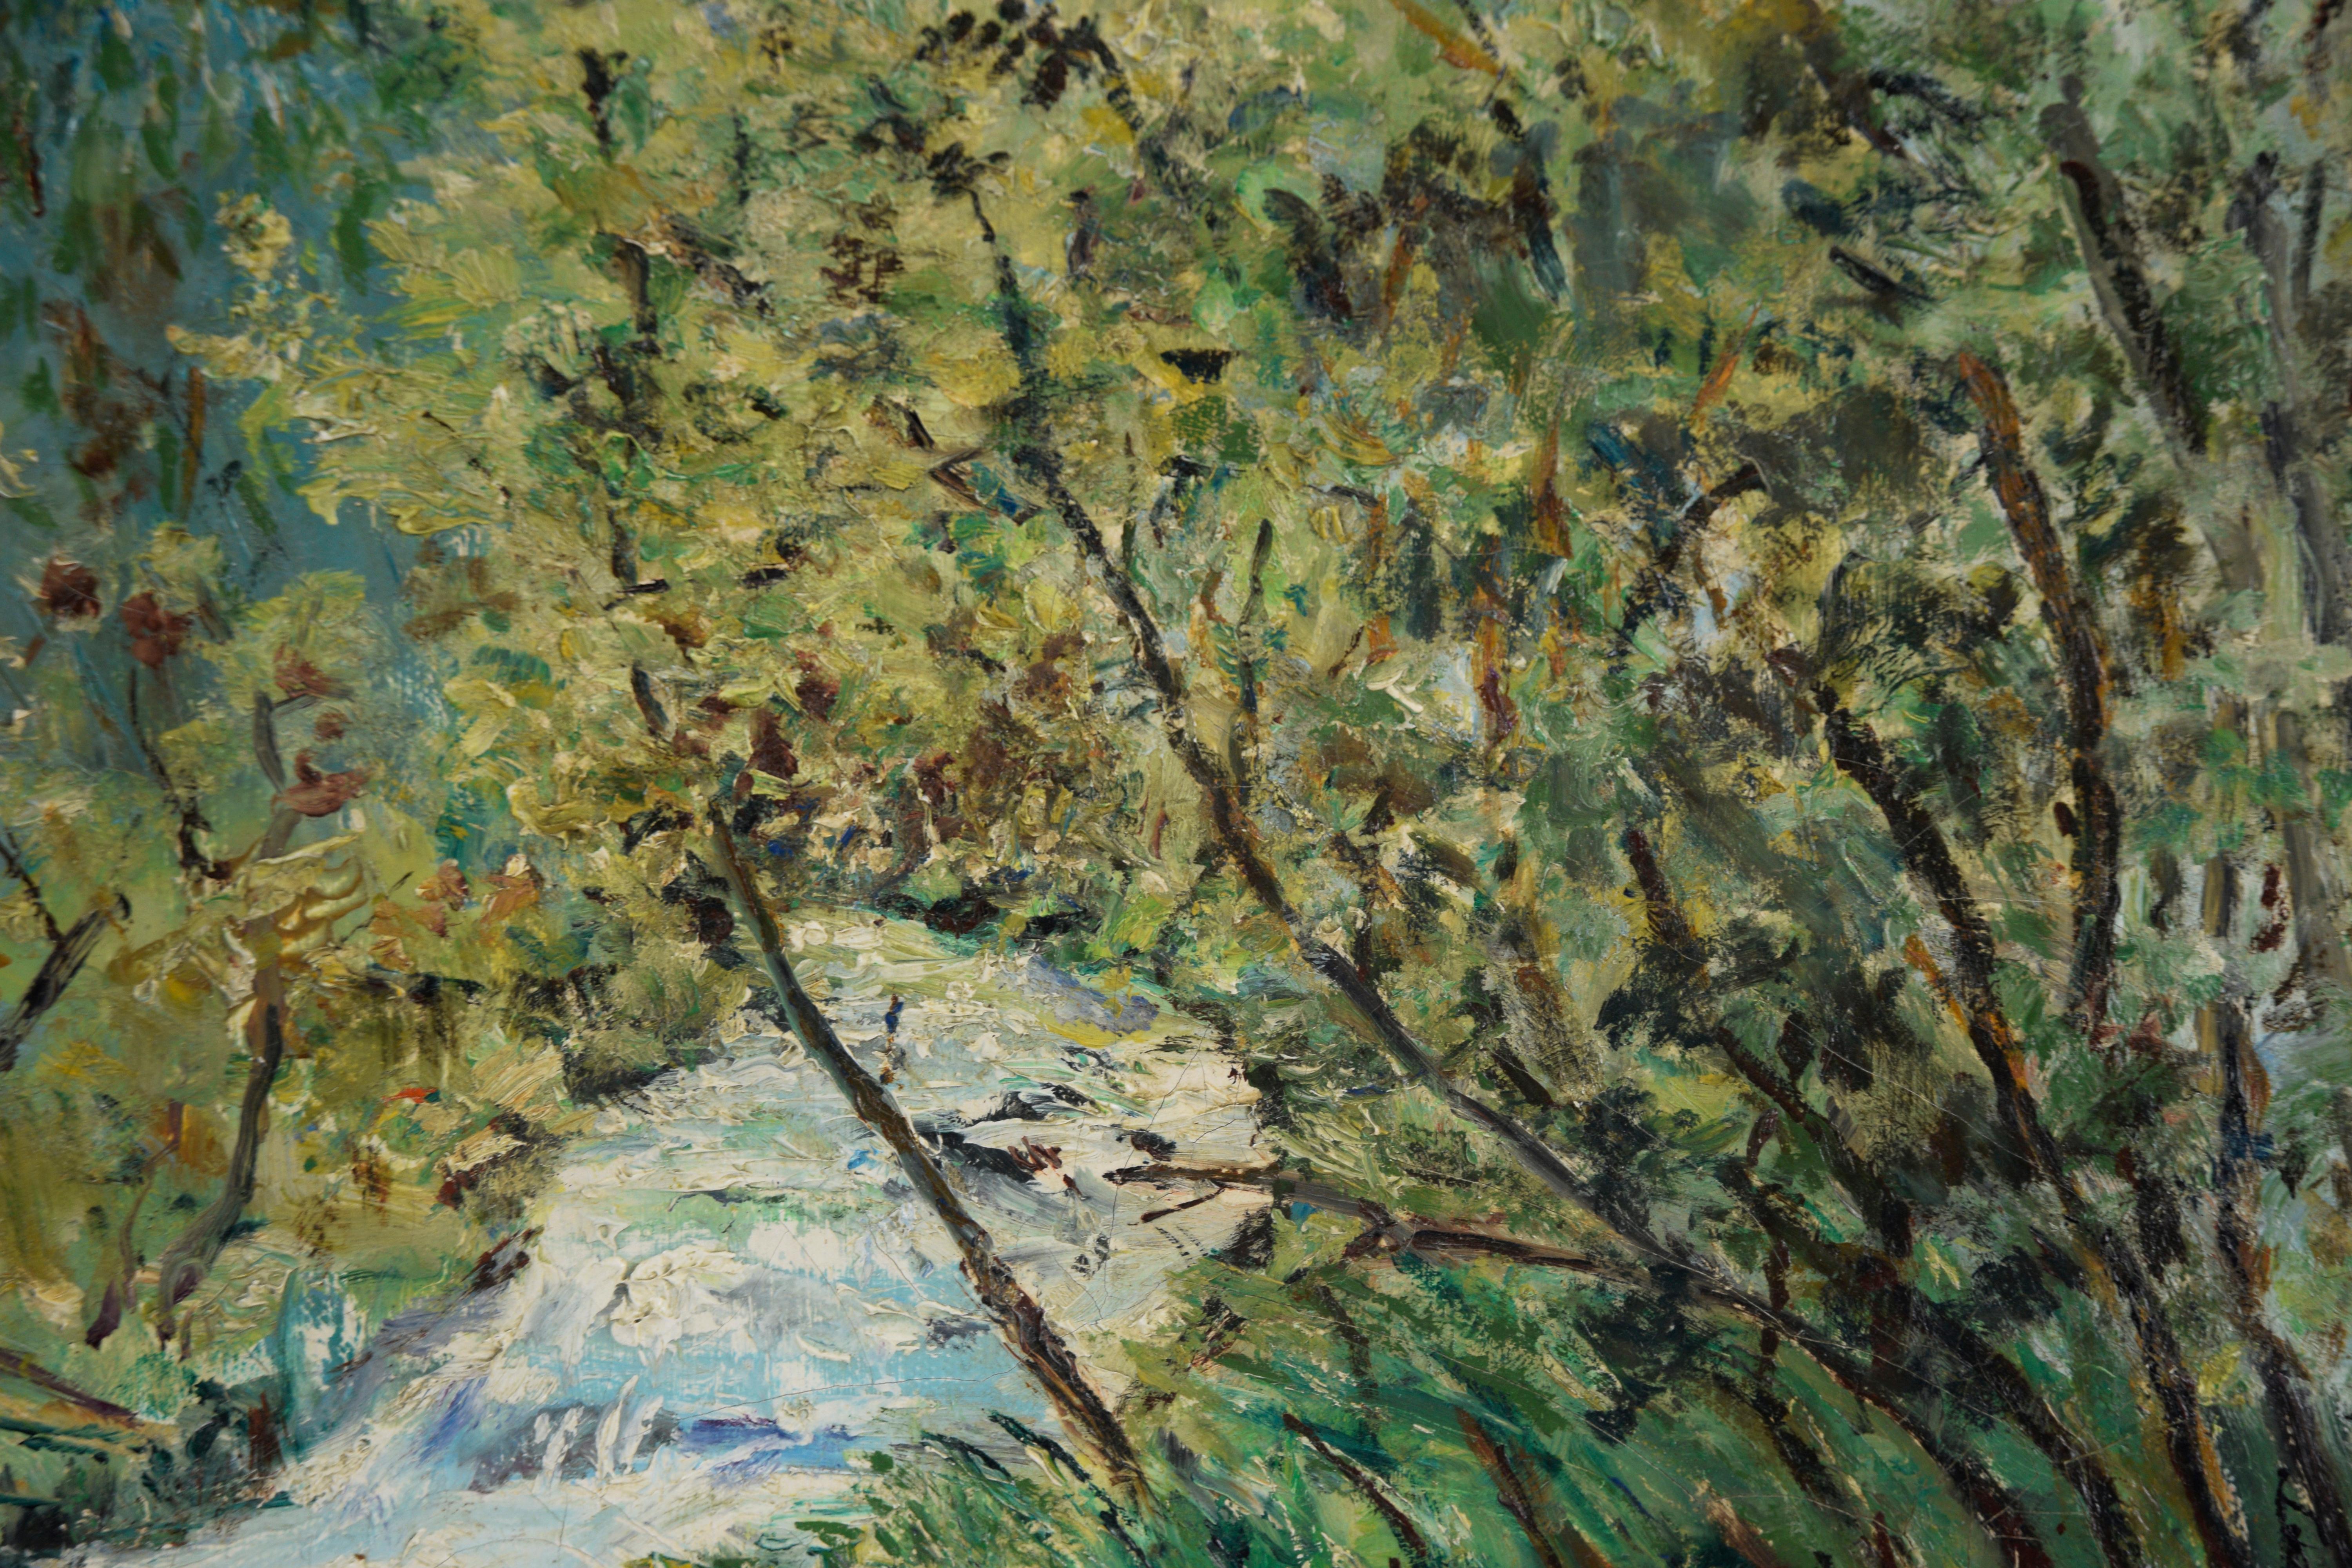 Ein ruhiger Fluss - Öl auf Leinwand

Ölgemälde mit der Darstellung eines Flusses, der durch eine Baumgruppe fließt. Kräftig grüne Bäume umgeben den Fluss, wobei die Bäume links des Flusses in tiefen Grüntönen gehalten sind, während die Bäume rechts